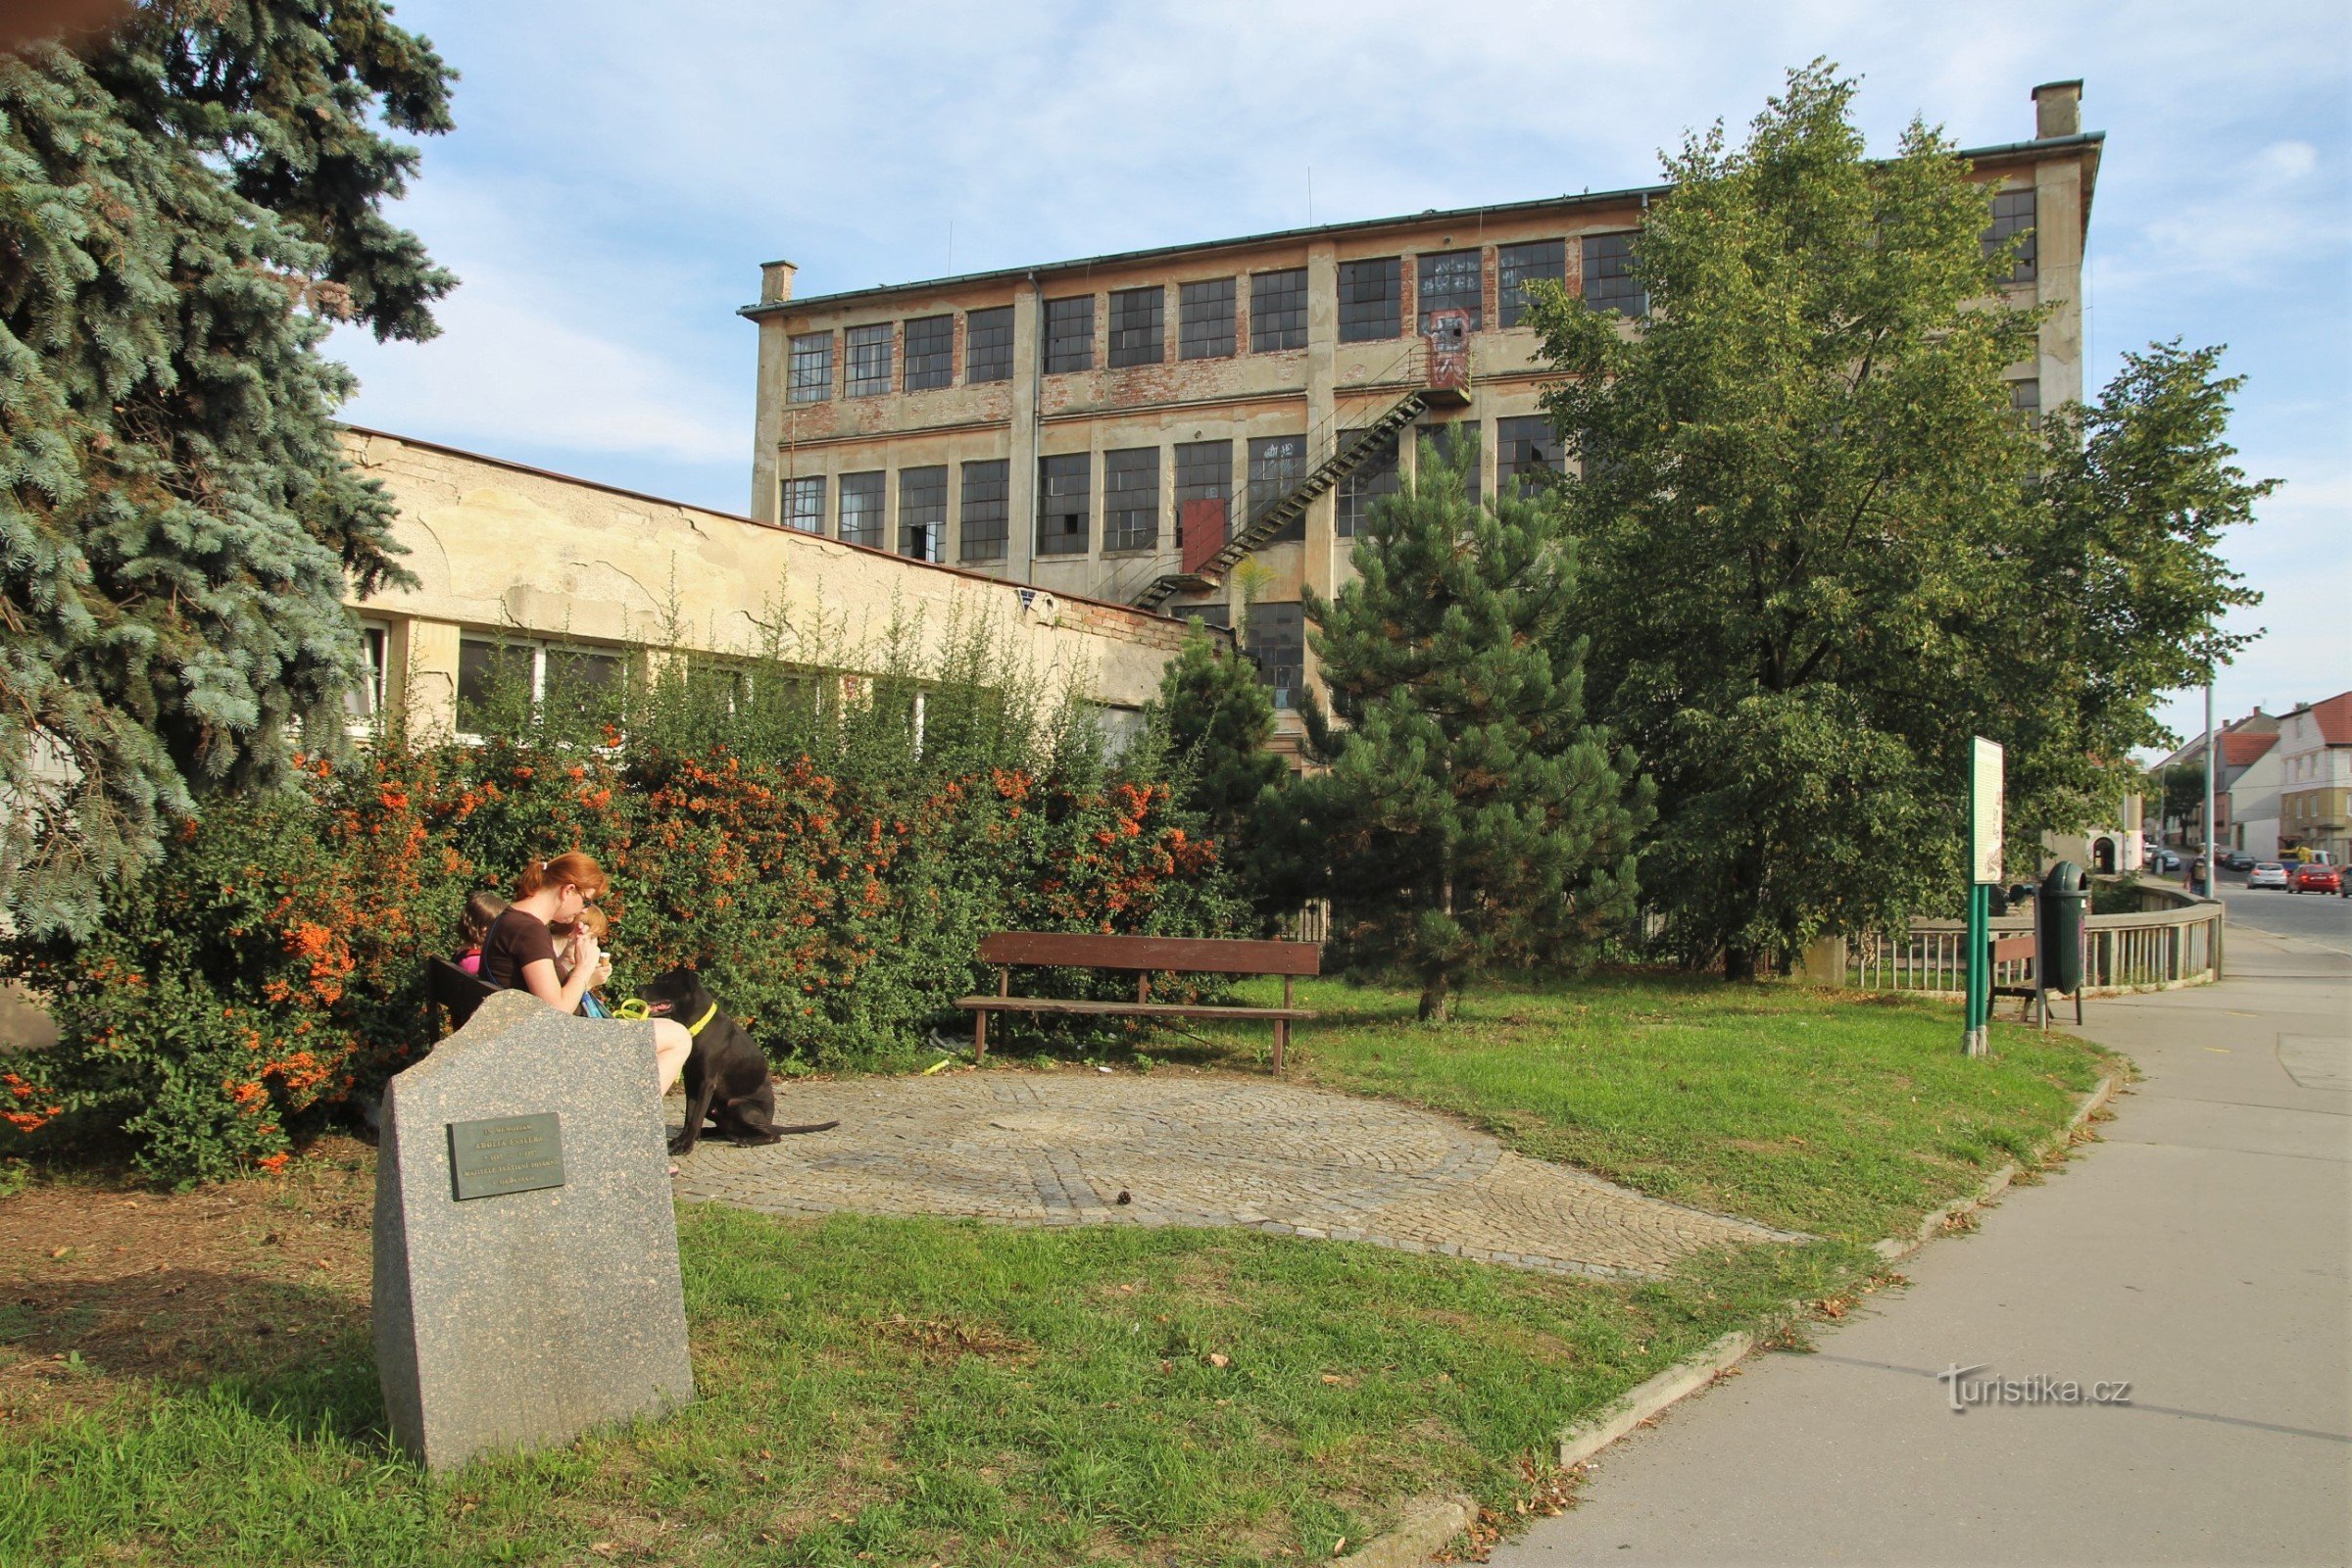 Monumentul lui Adolf Essler, pe fundal clădirea fabricii Essler